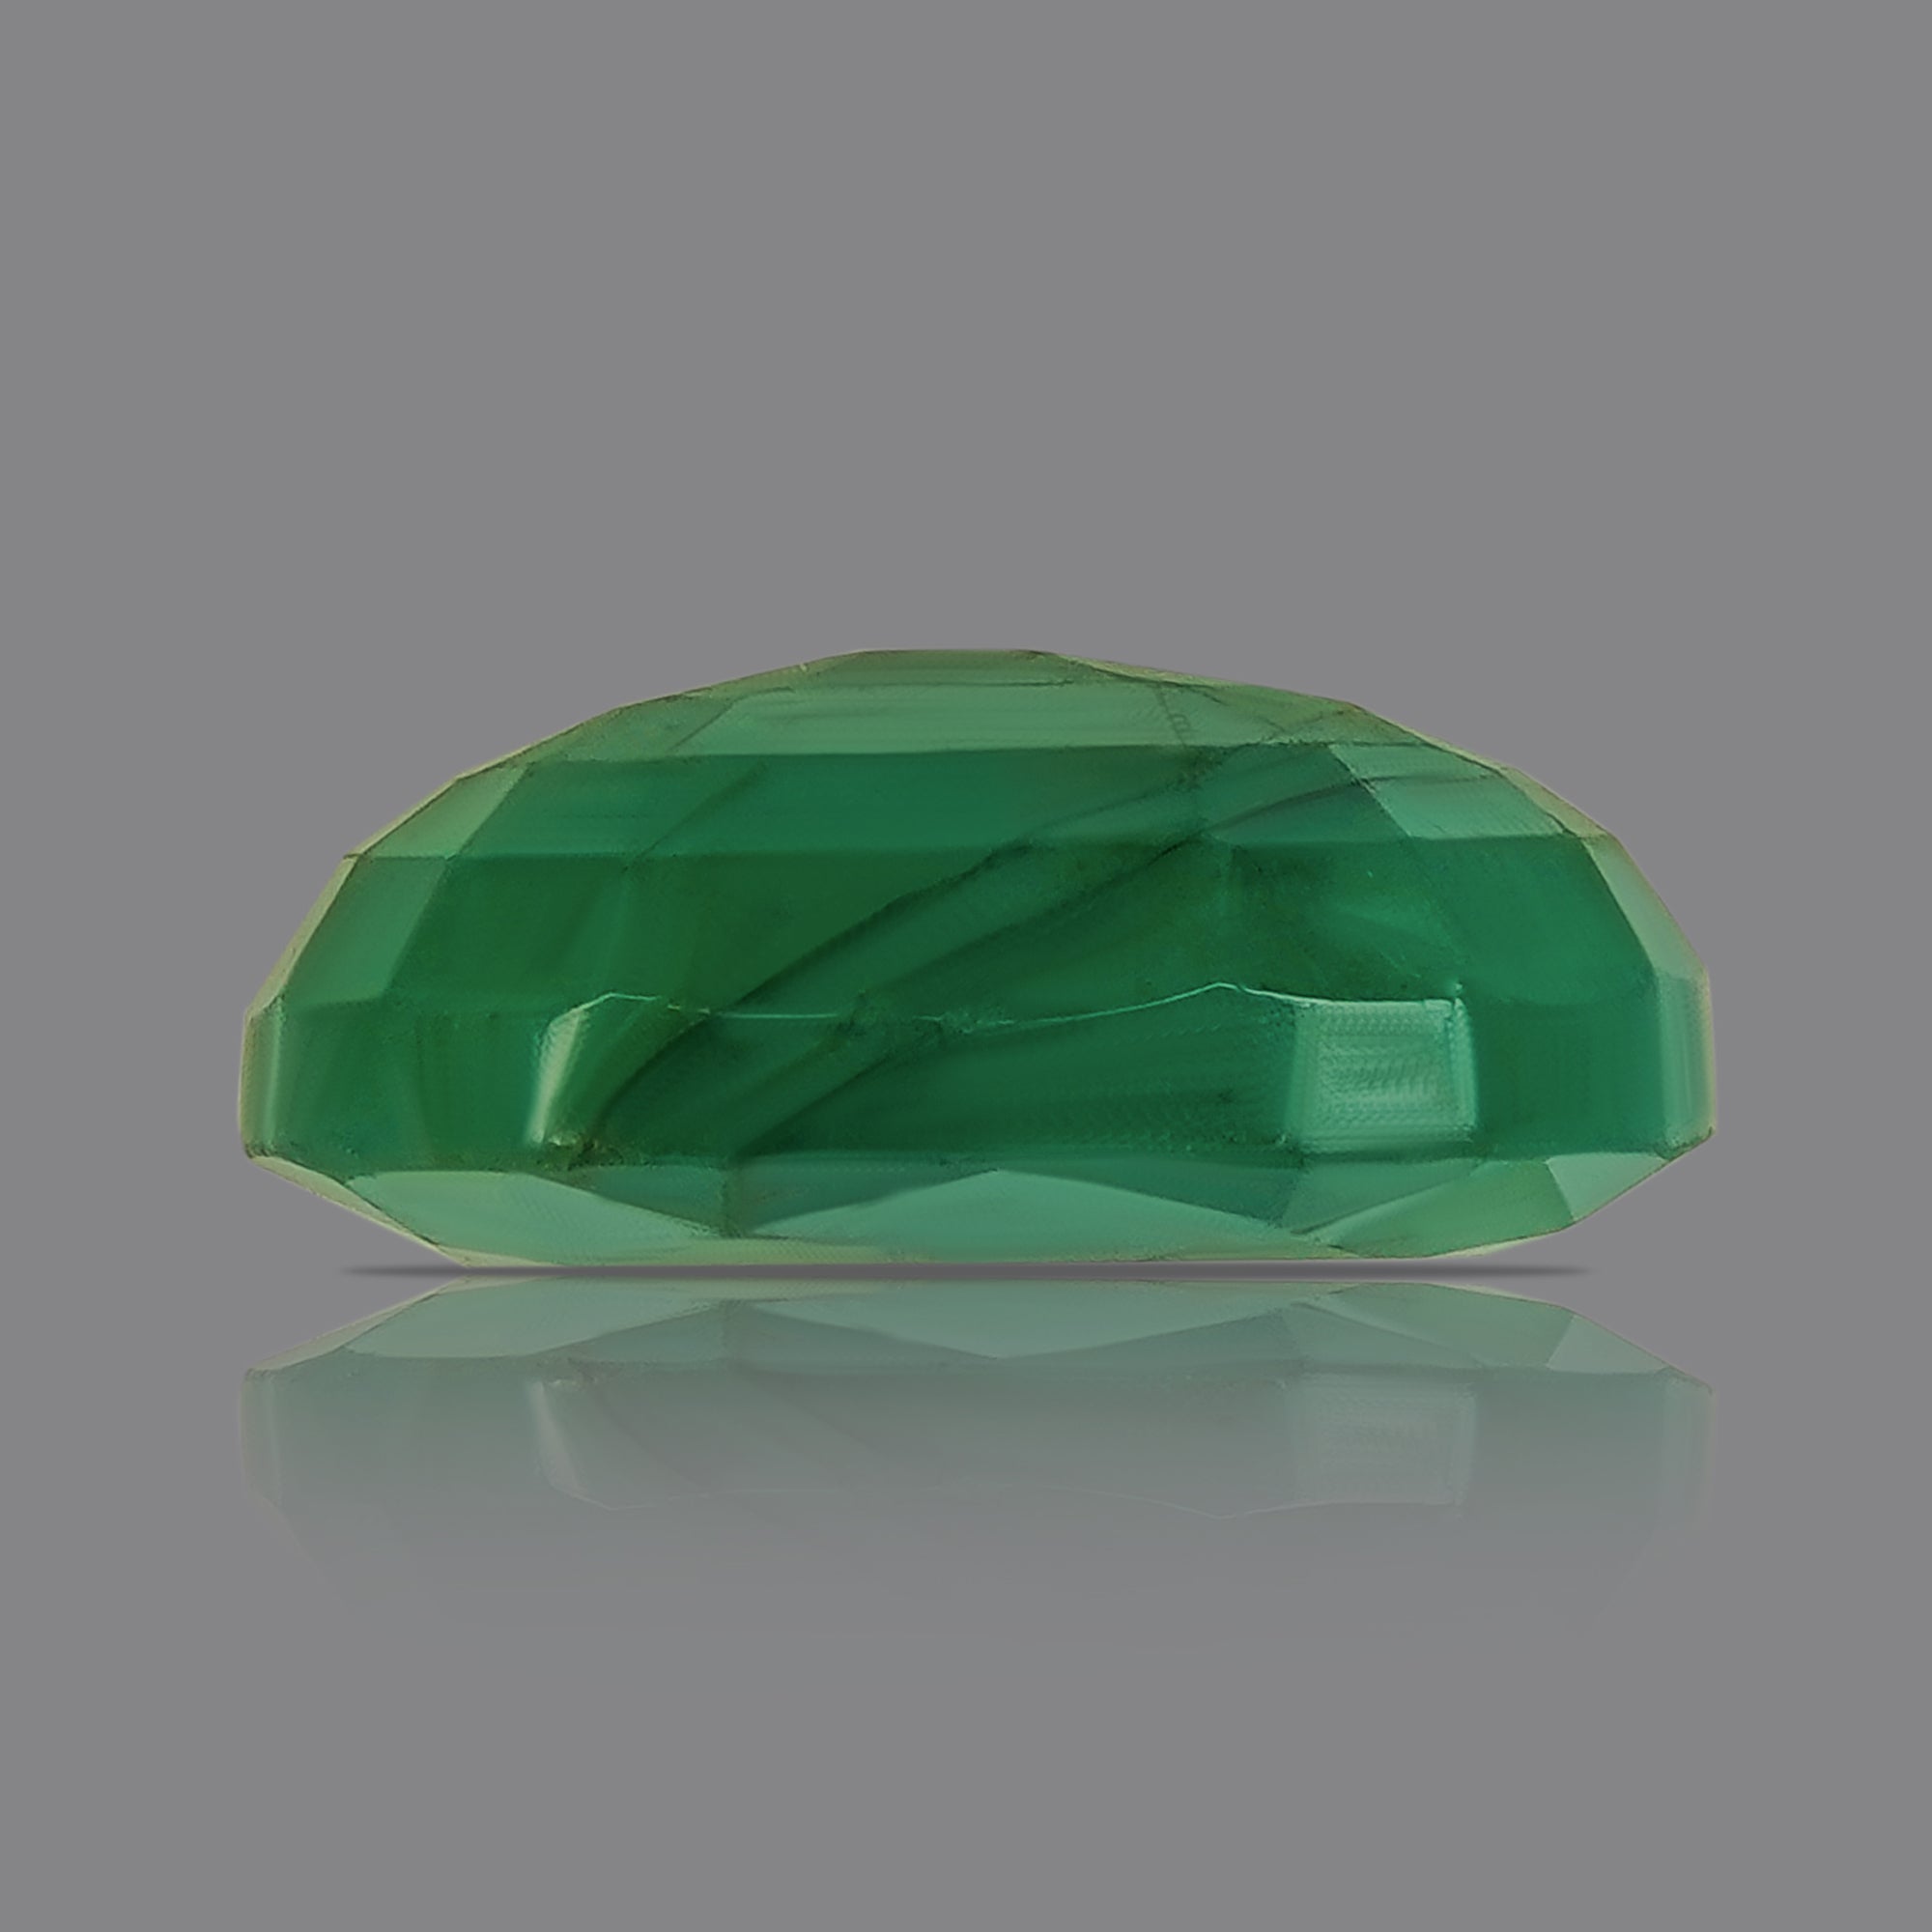 Panna (Emerald) Luxury - (7.45 Ratti)